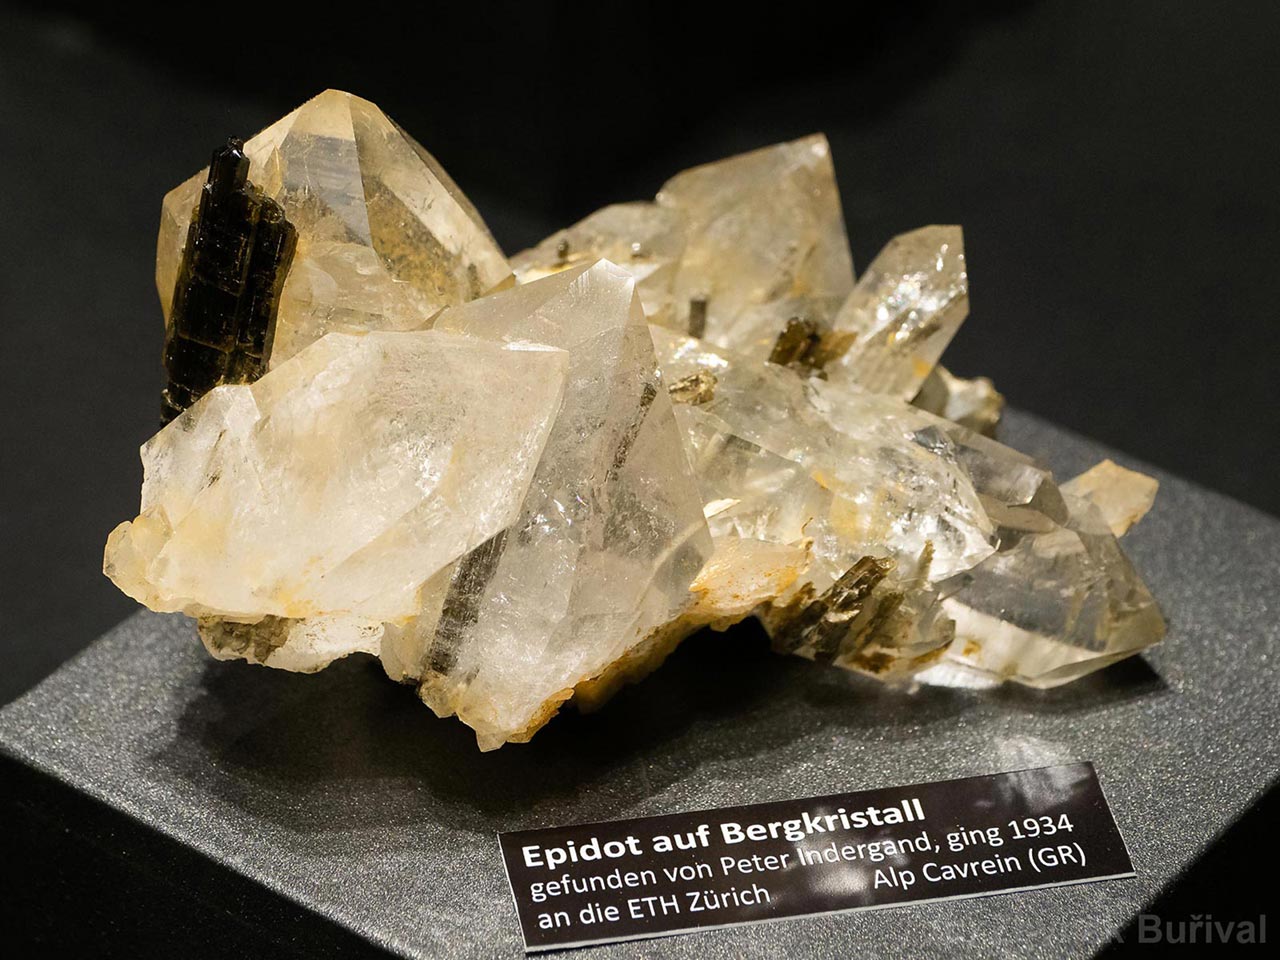 Epidote crystals on quartz from Alp Cavrein, Switzerland